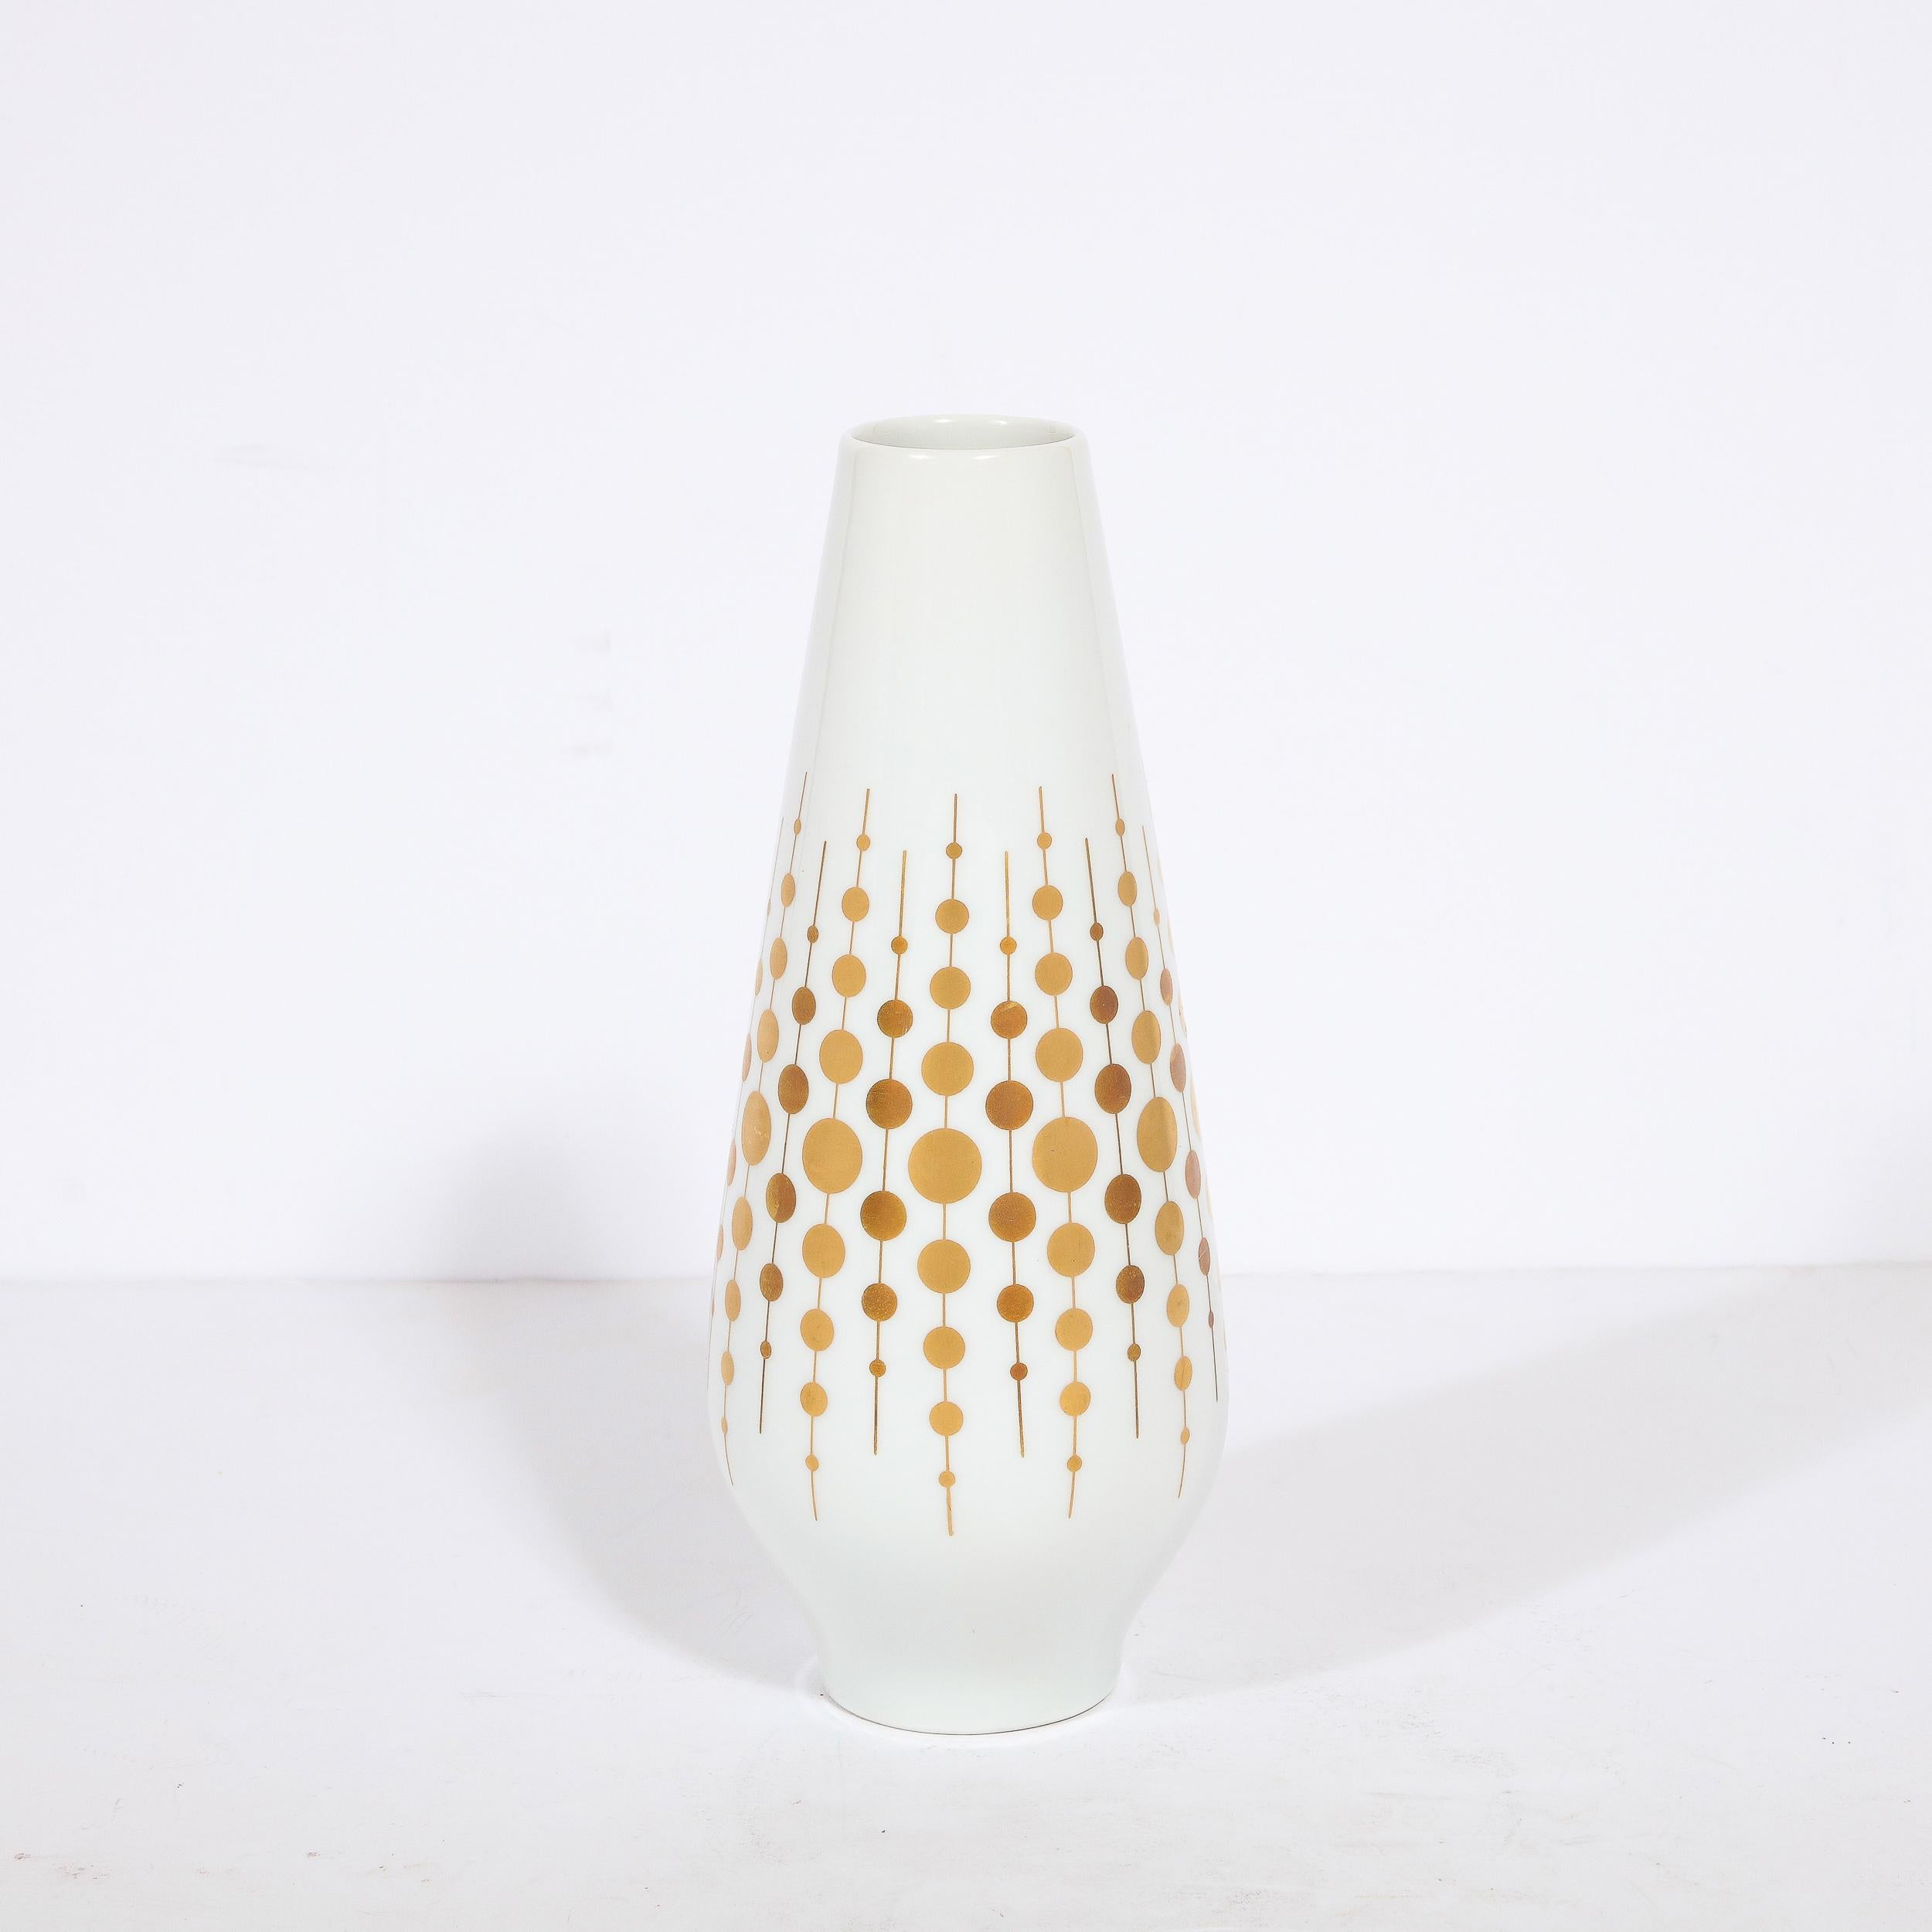 Ce vase raffiné en porcelaine de style moderne du milieu du siècle a été réalisé par l'estimée Alka Kunst en Allemagne vers 1960. Il présente un corps cylindrique en porcelaine blanche qui s'évase subtilement de sa base circulaire pour s'effiler